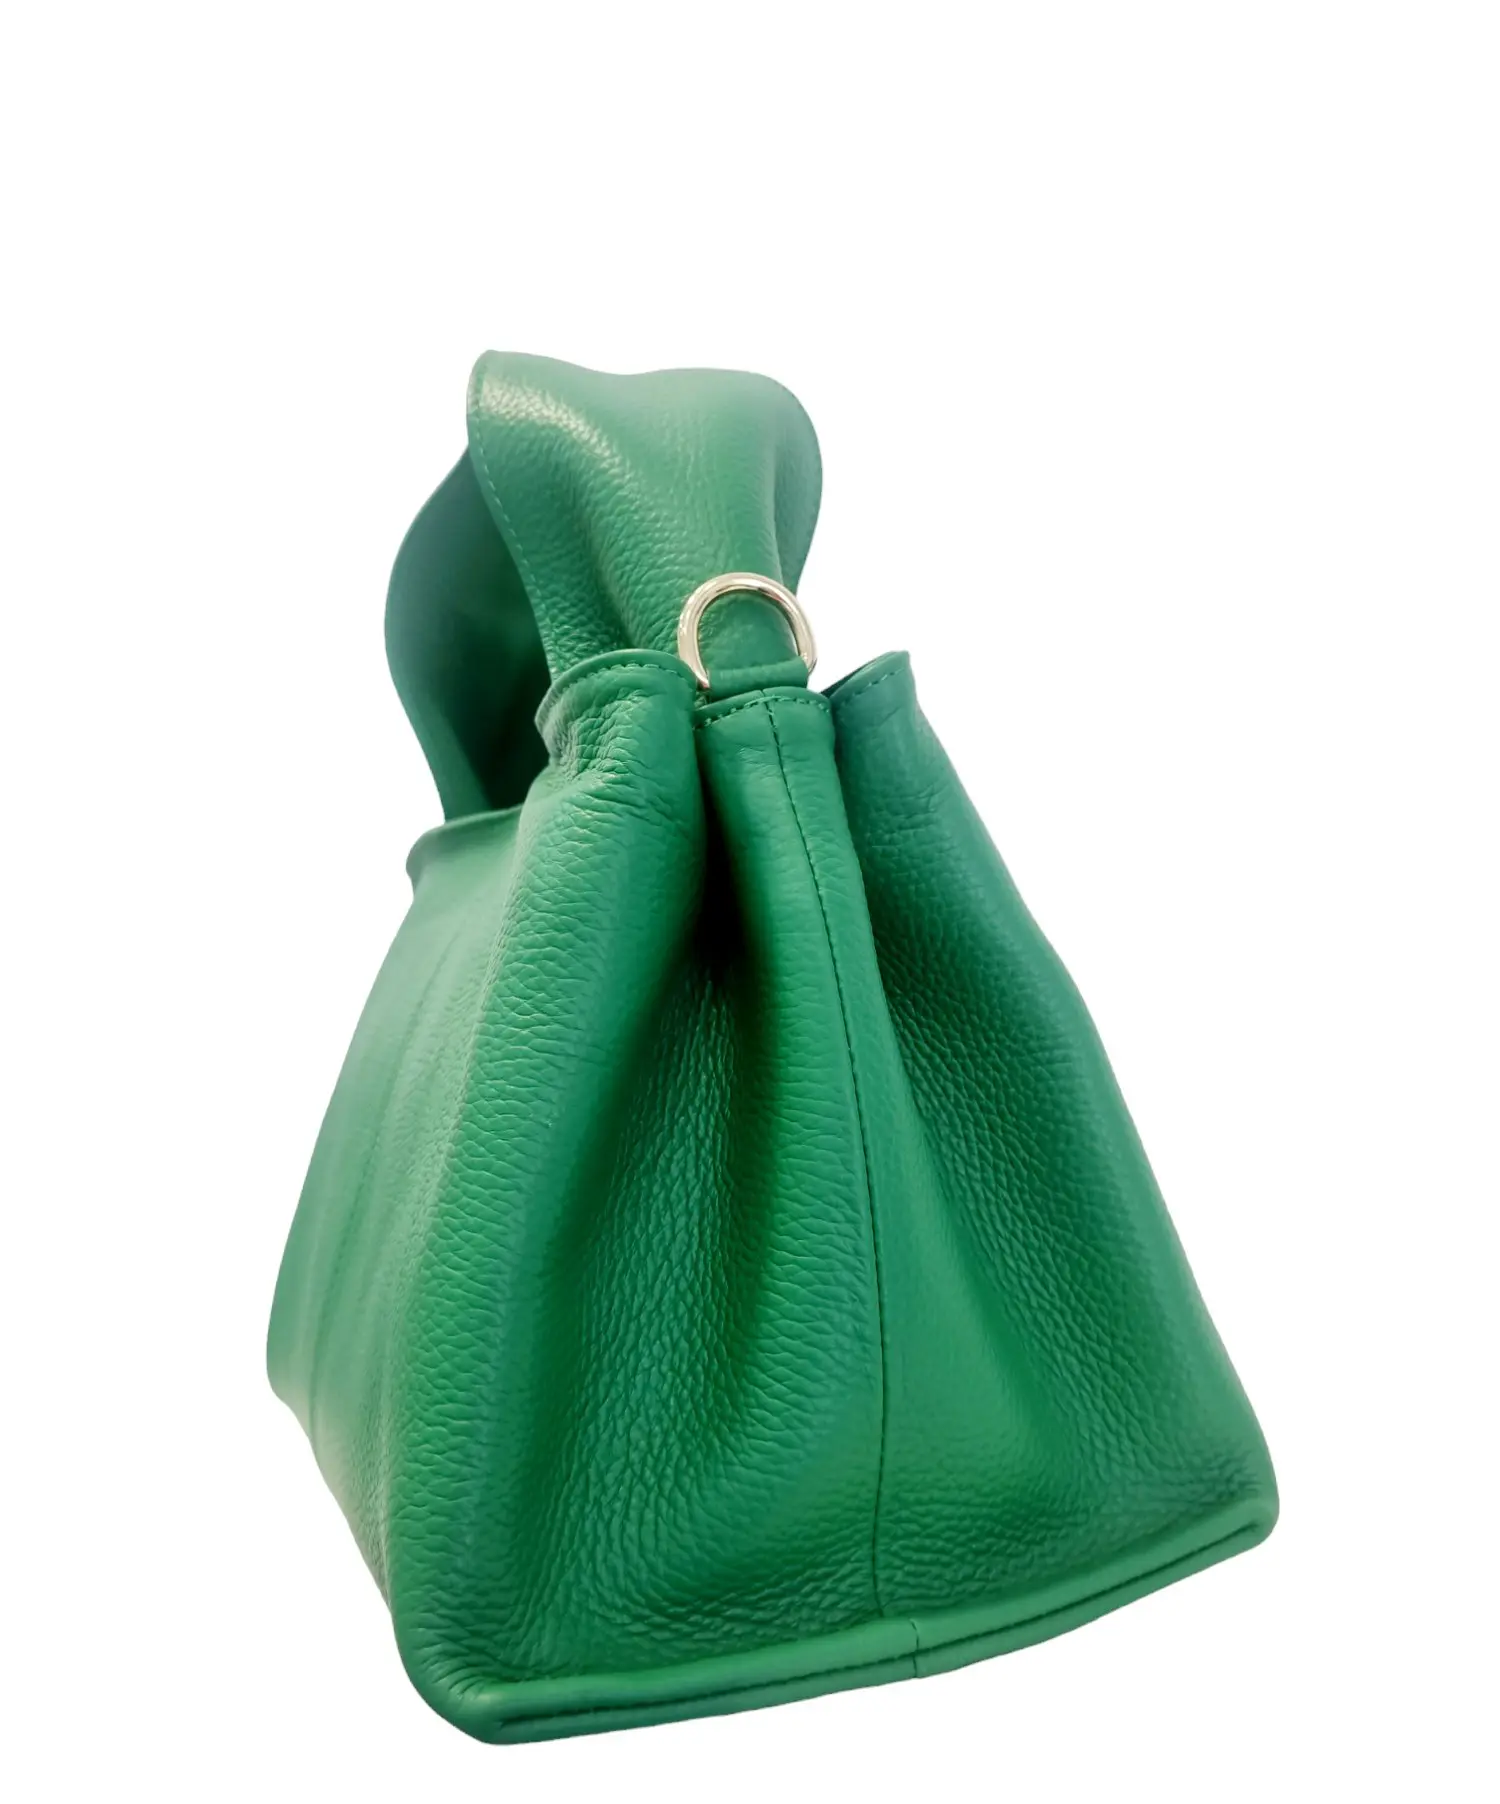 Grüne Tasche aus echtem Leder, hergestellt in Italien, ausgestattet mit Schultergurt und gefüttertem Innenraum mit doppelten Seitentaschen. Reißverschluss. Maße L 27 B16 H20